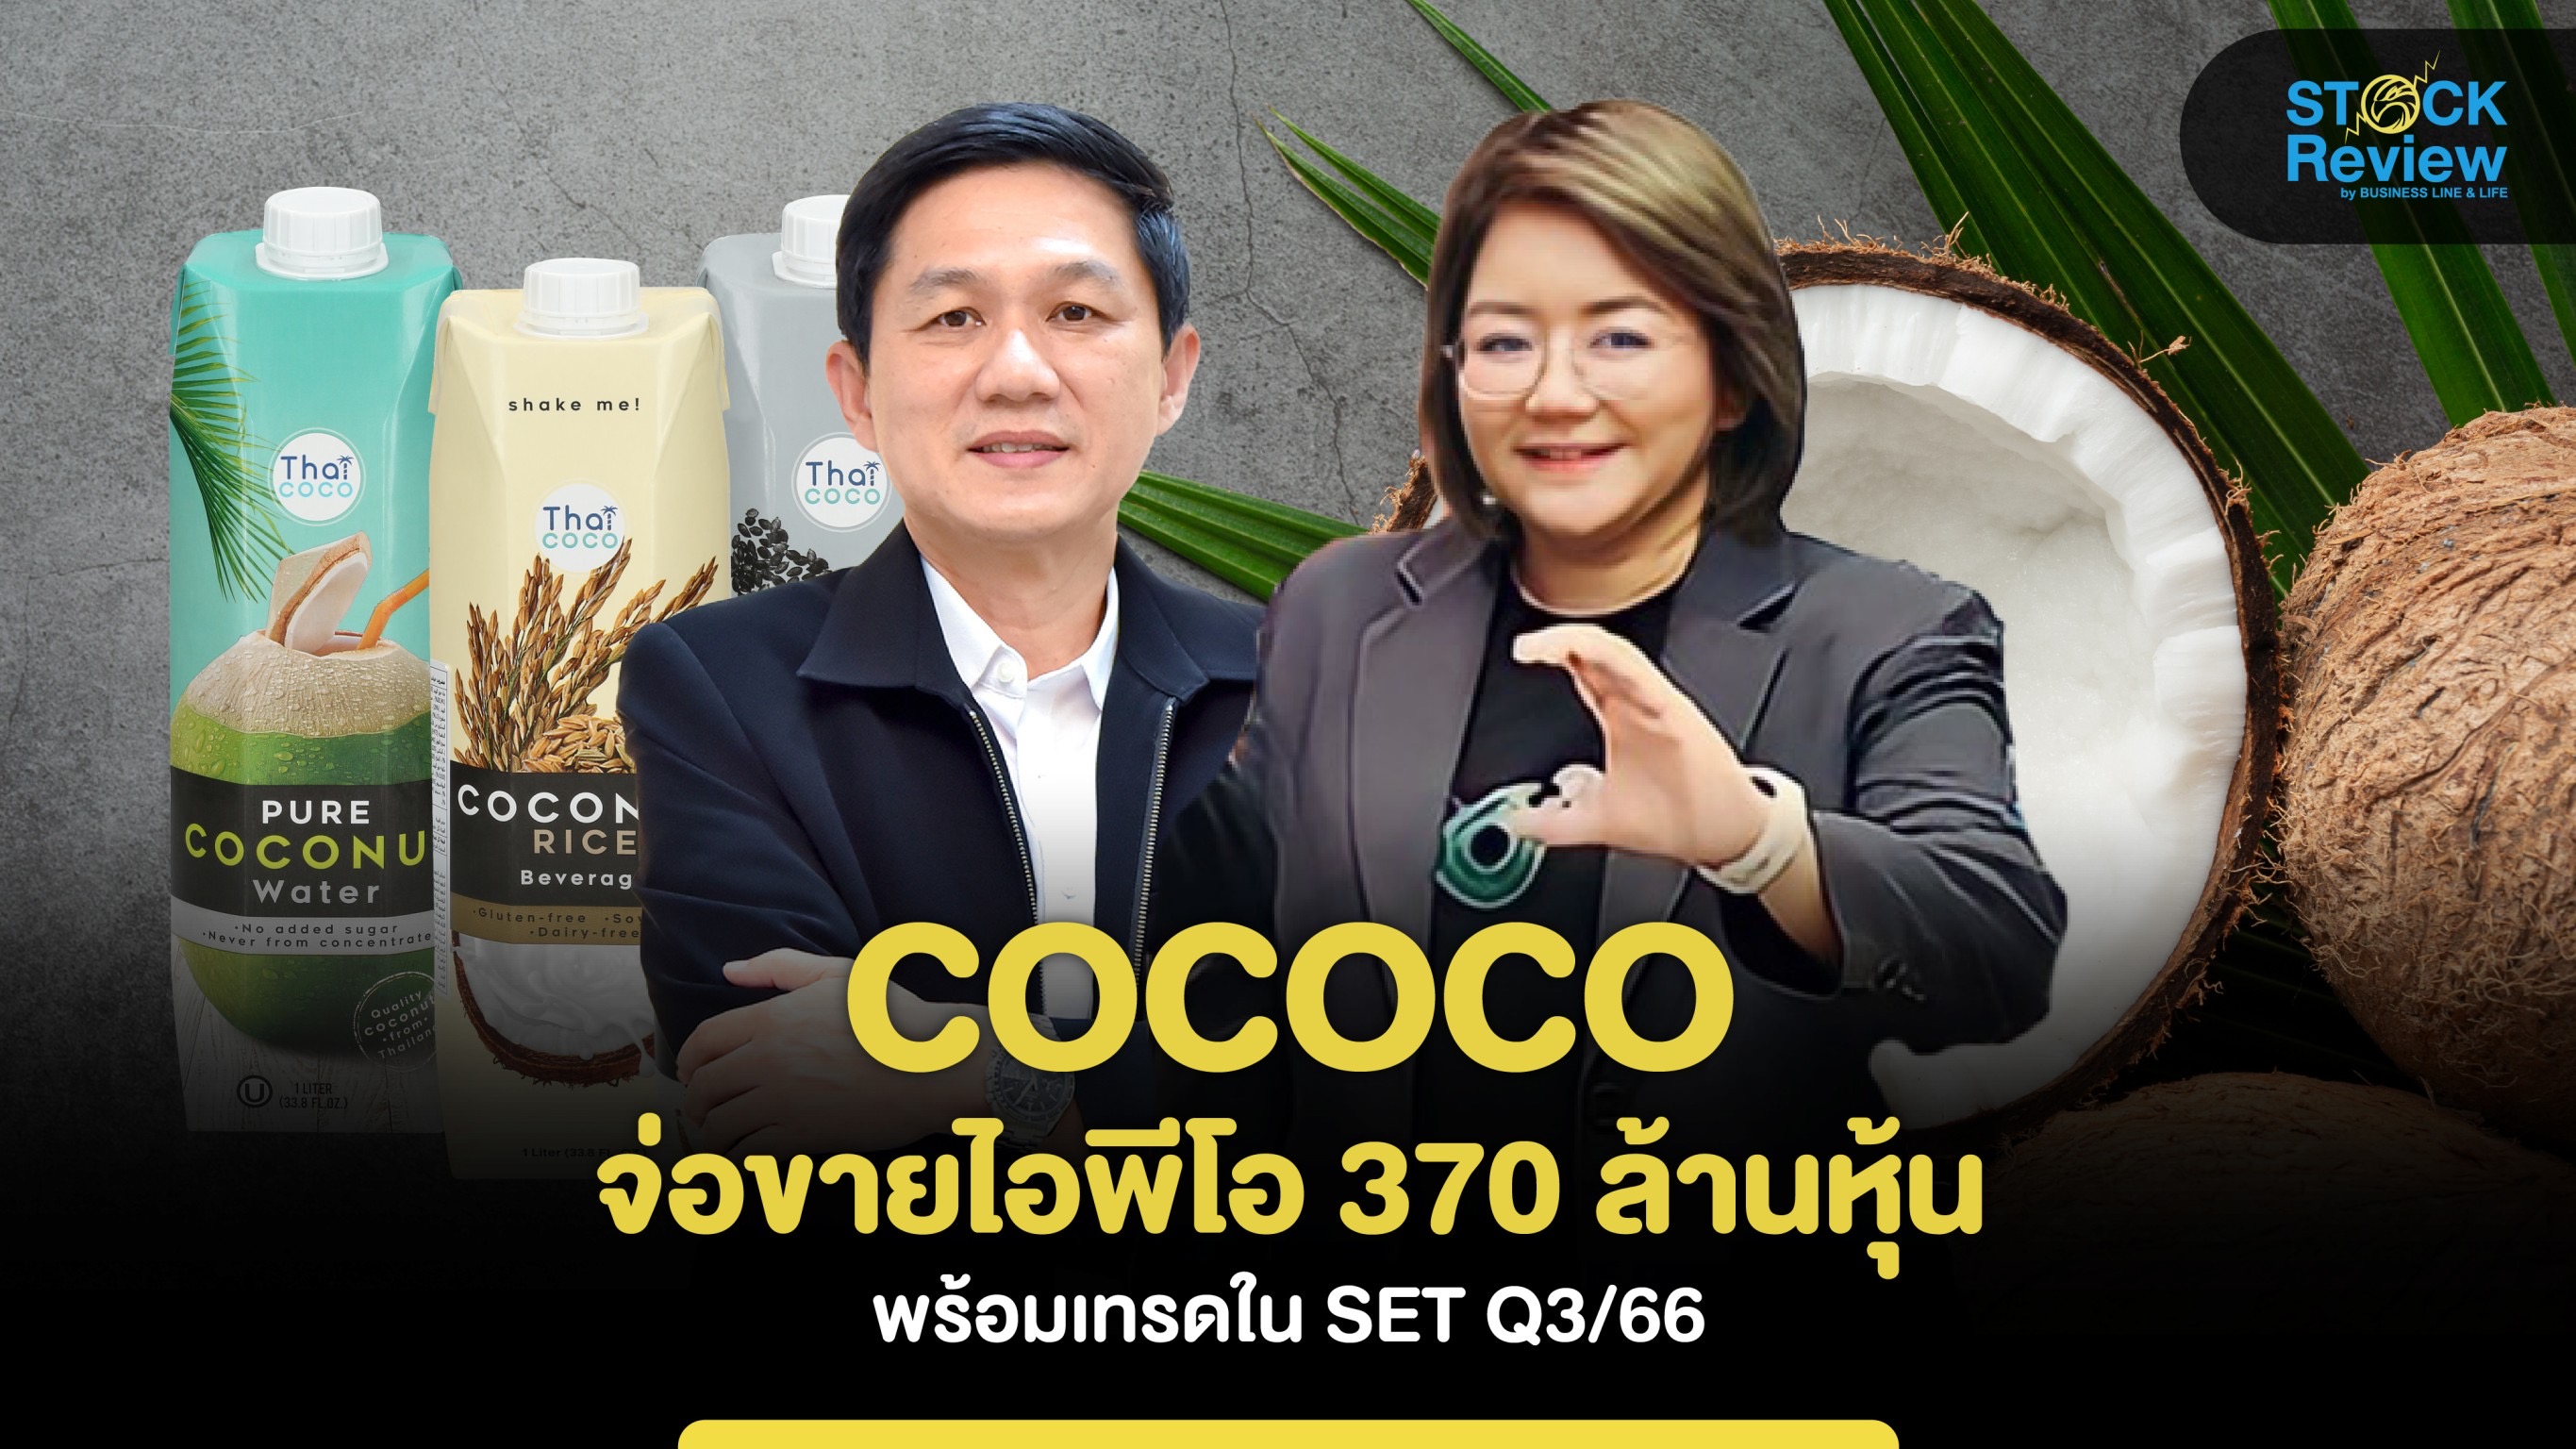 COCOCO จ่อขายไอพีโอ 370 ล้านหุ้น พร้อมเทรดในSET Q3/66